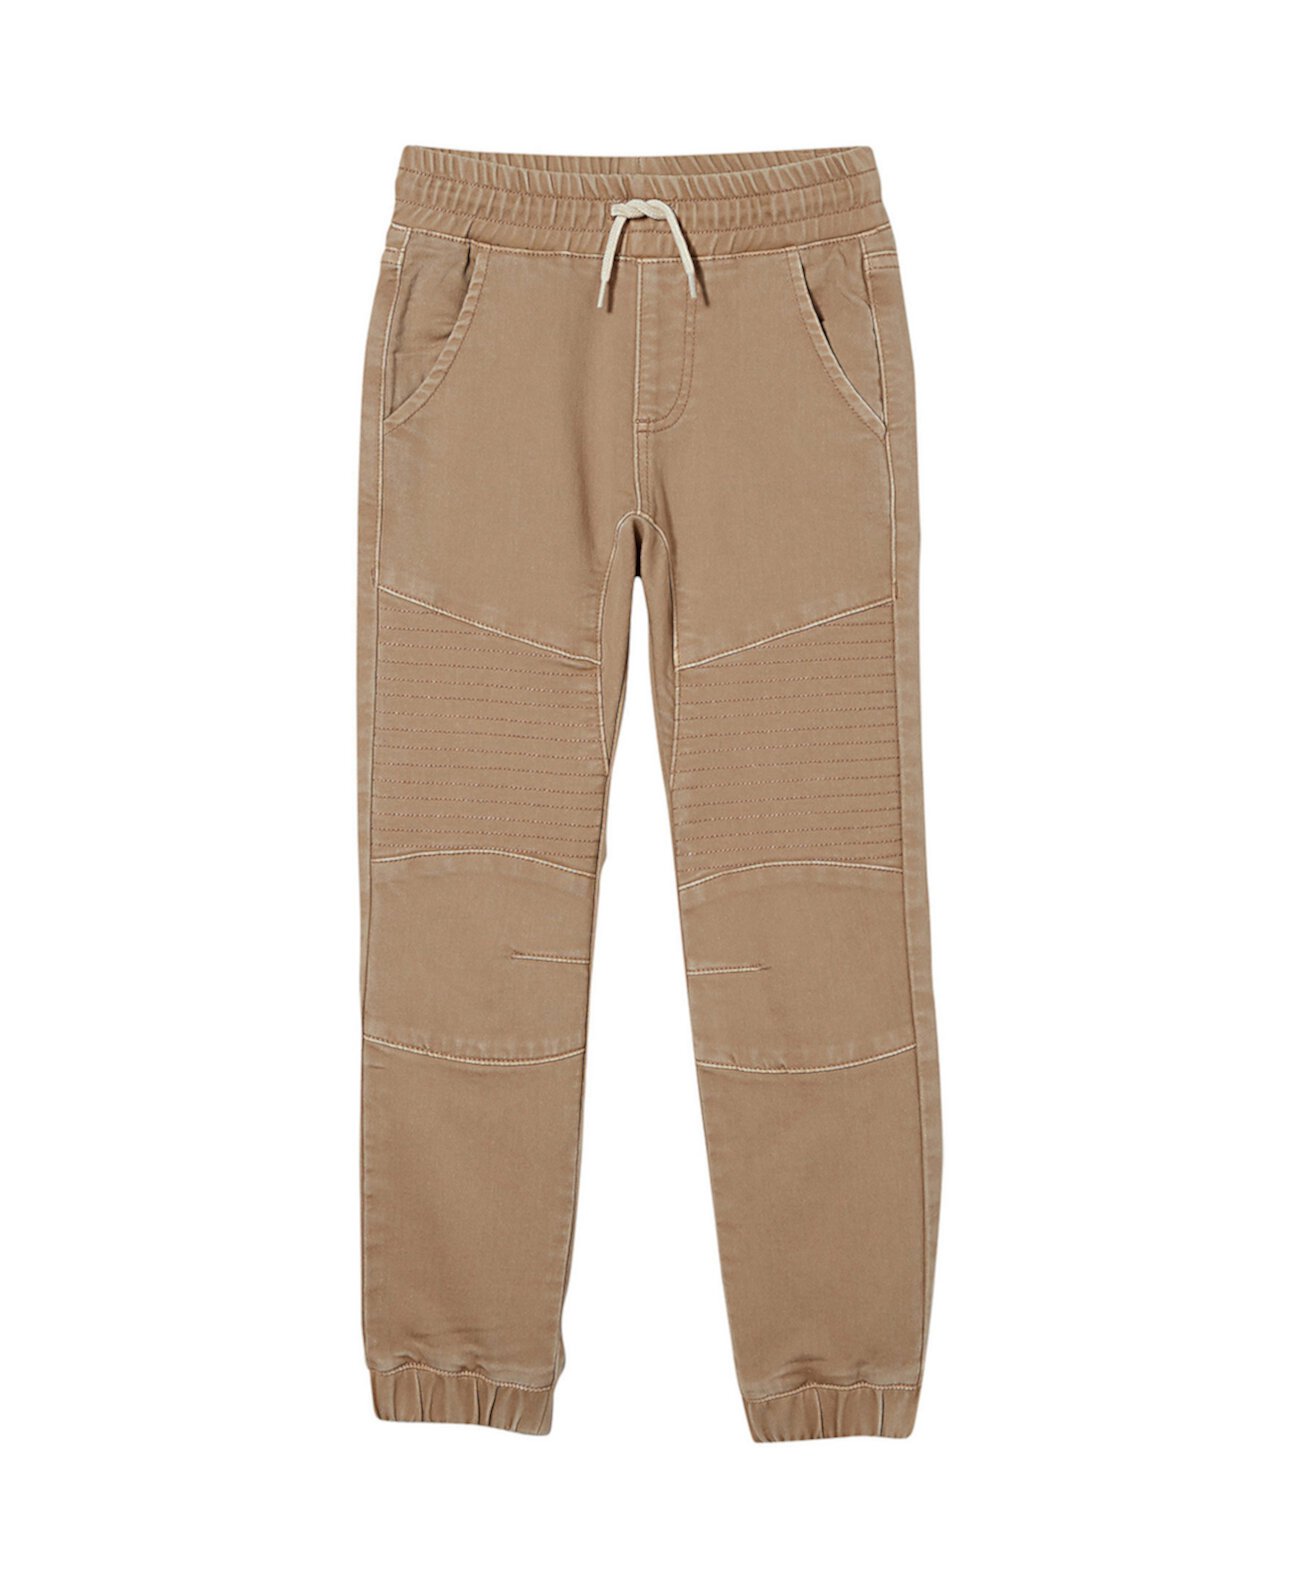 Свободные джинсы-джоггеры с напуском и завязками для больших мальчиков COTTON ON